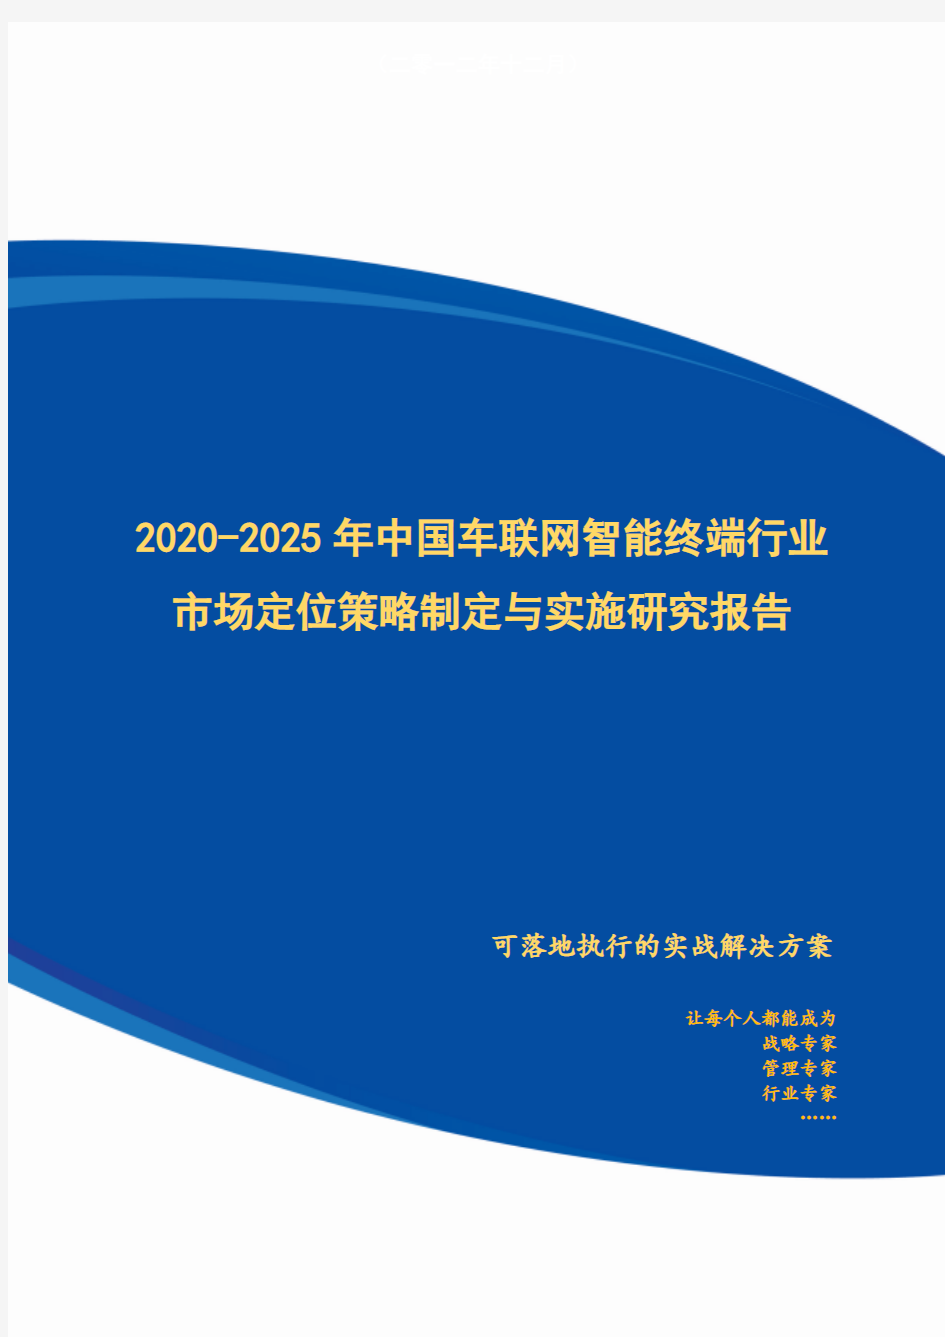 2020-2025年中国车联网智能终端行业市场定位策略制定与实施研究报告